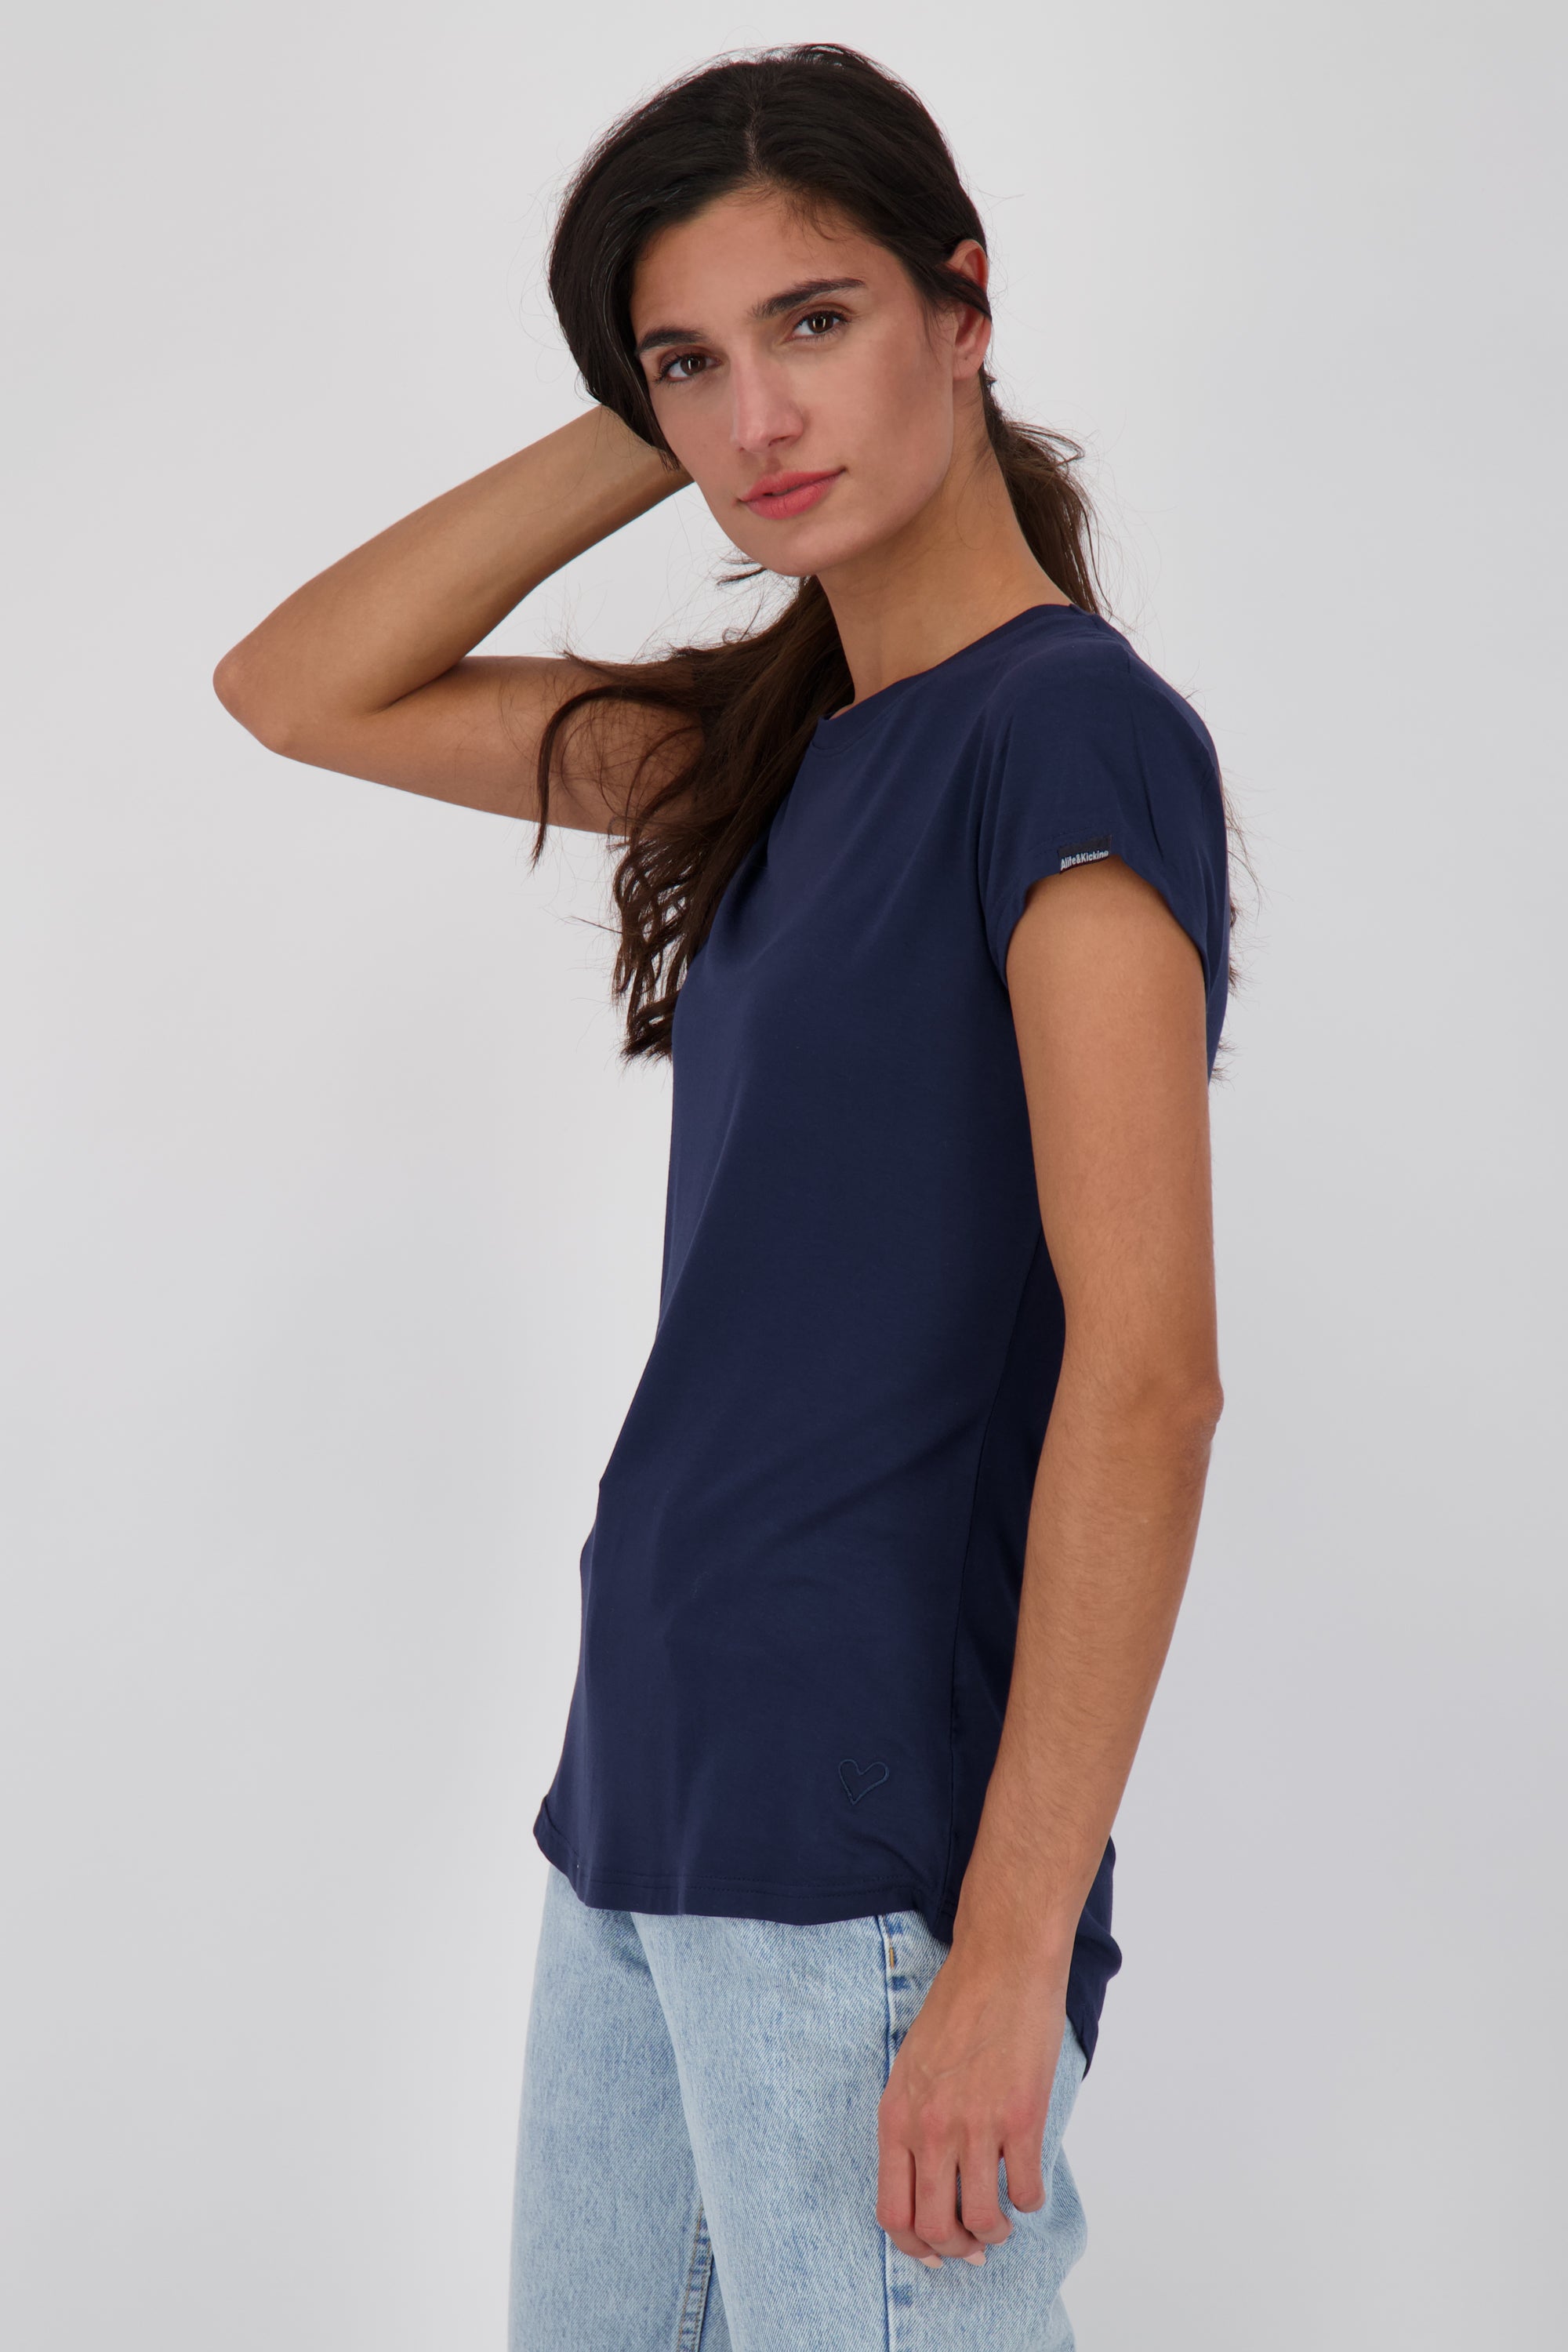 Vielseitiges Basic-Shirt für stylische Outfits: MimmyAK A von Alife and Kickin Dunkelblau